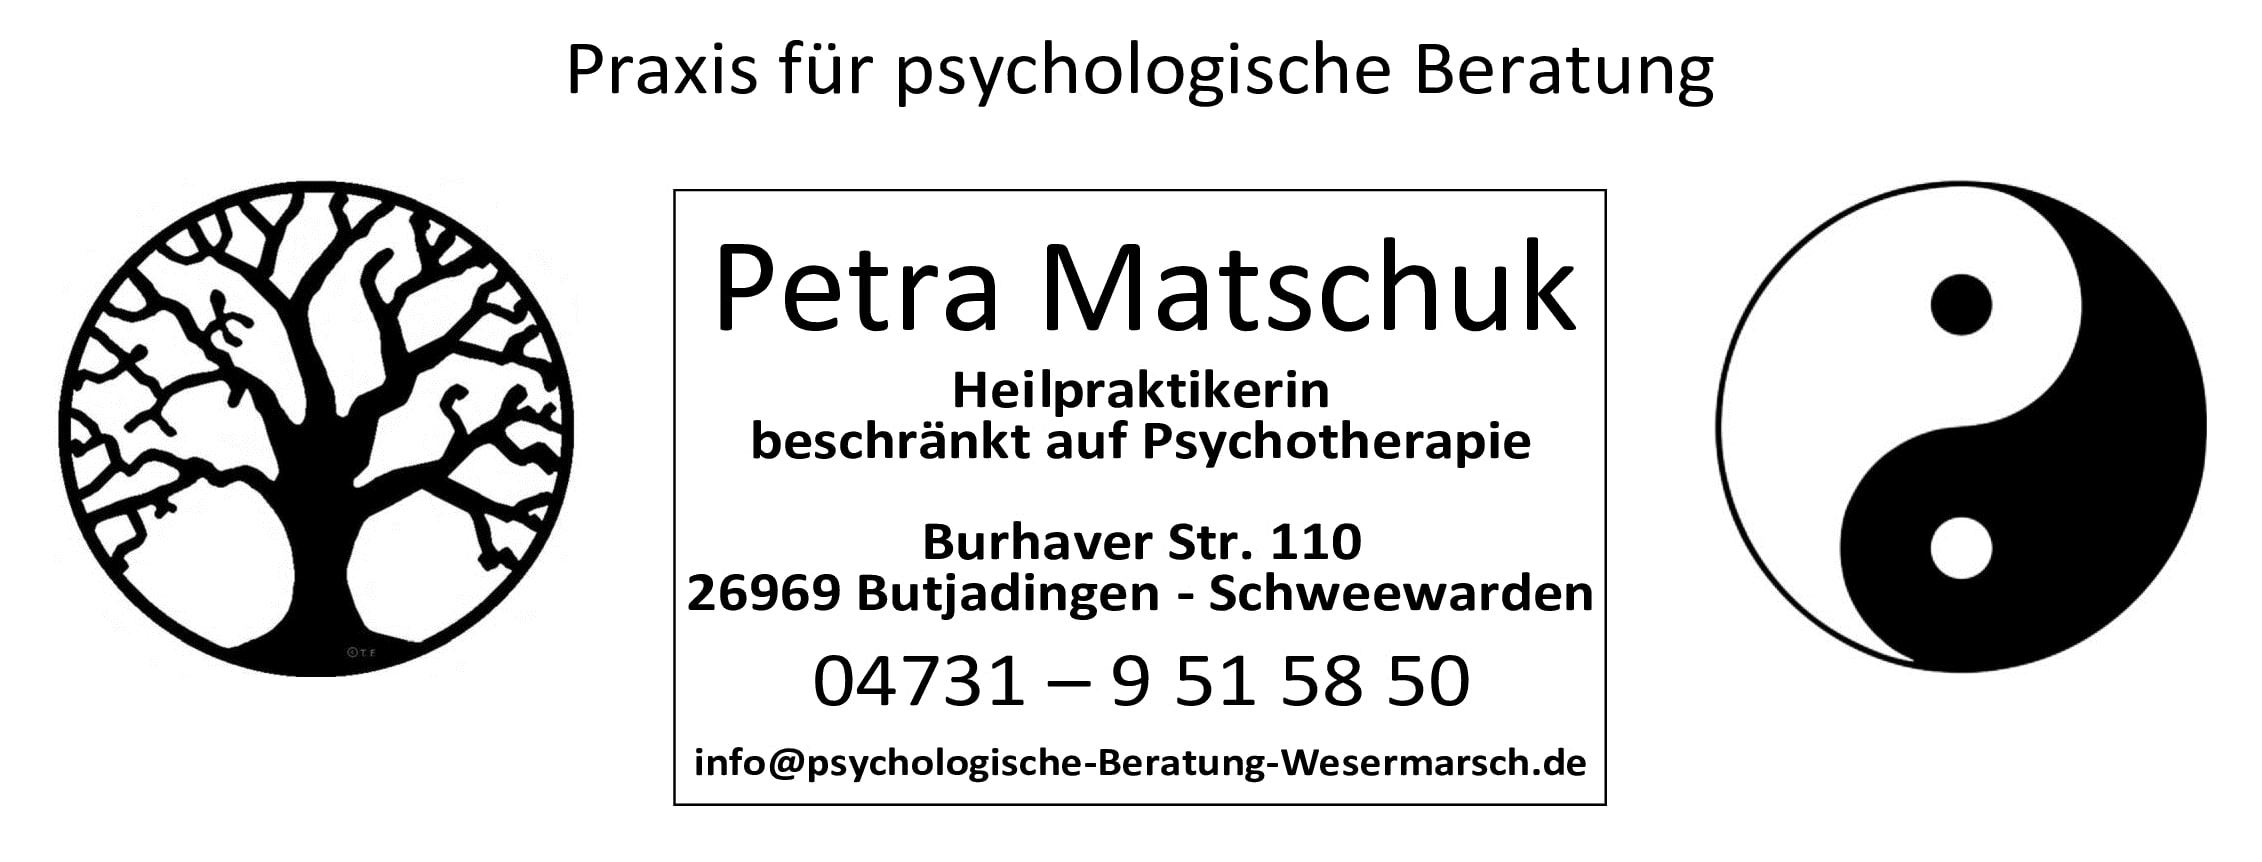 (c) Psychologische-beratung-wesermarsch.de